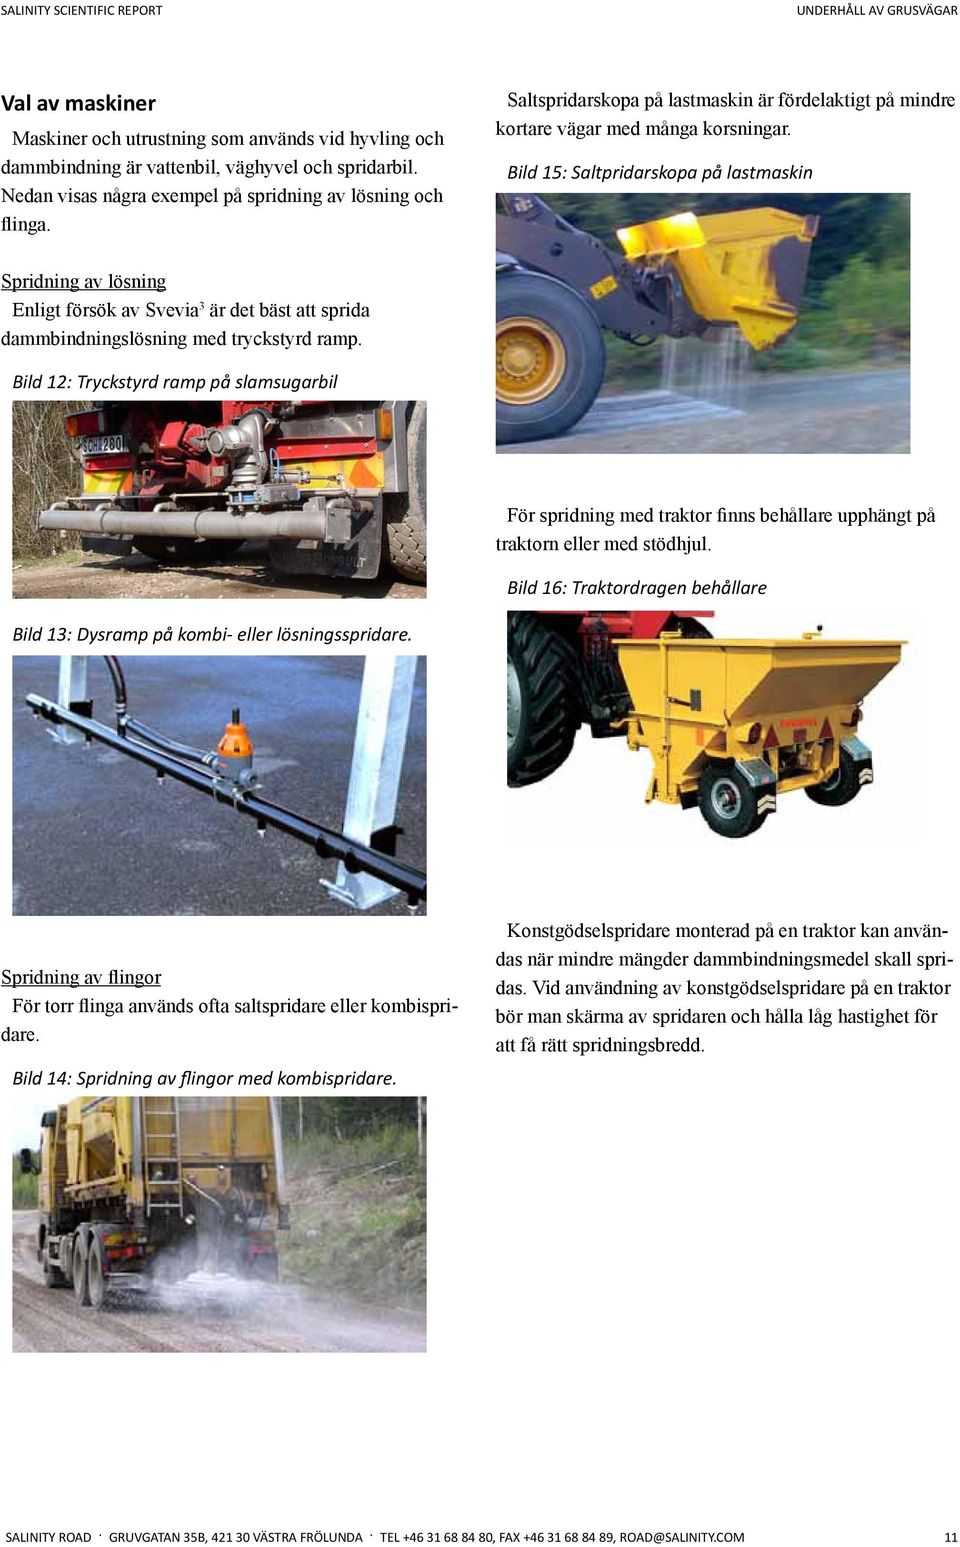 Bild 15: Saltpridarskopa på lastmaskin Spridning av lösning Enligt försök av Svevia 3 är det bäst att sprida dammbindningslösning med tryckstyrd ramp.